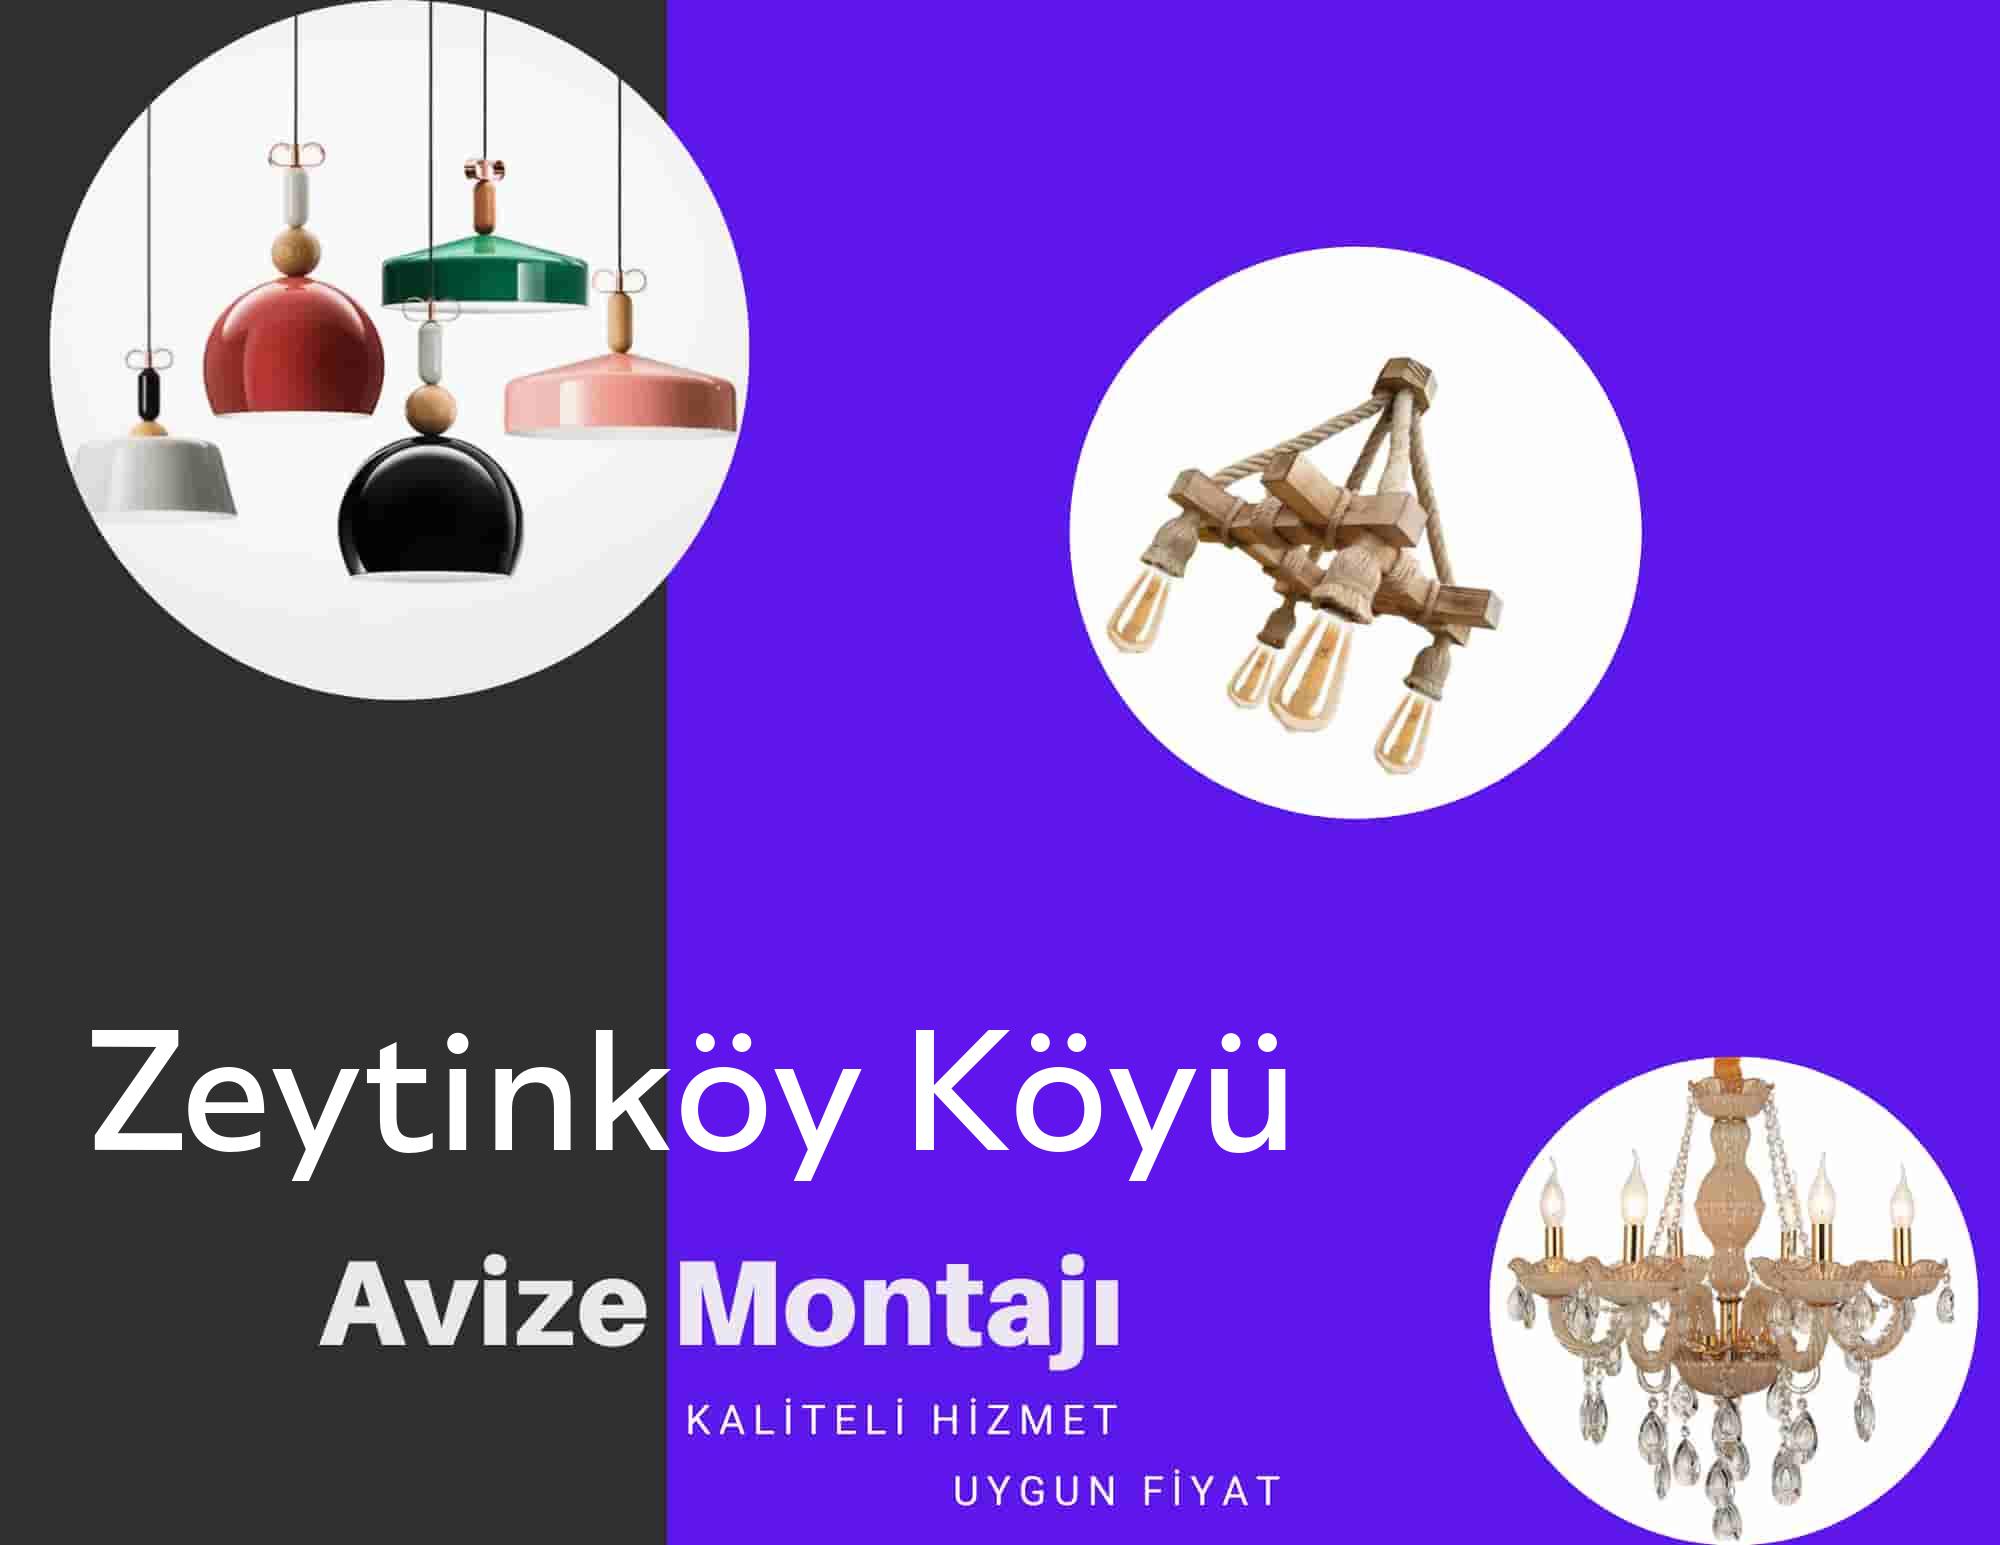 Zeytinköy Köyüde avize montajı yapan yerler arıyorsanız elektrikcicagir anında size profesyonel avize montajı ustasını yönlendirir.